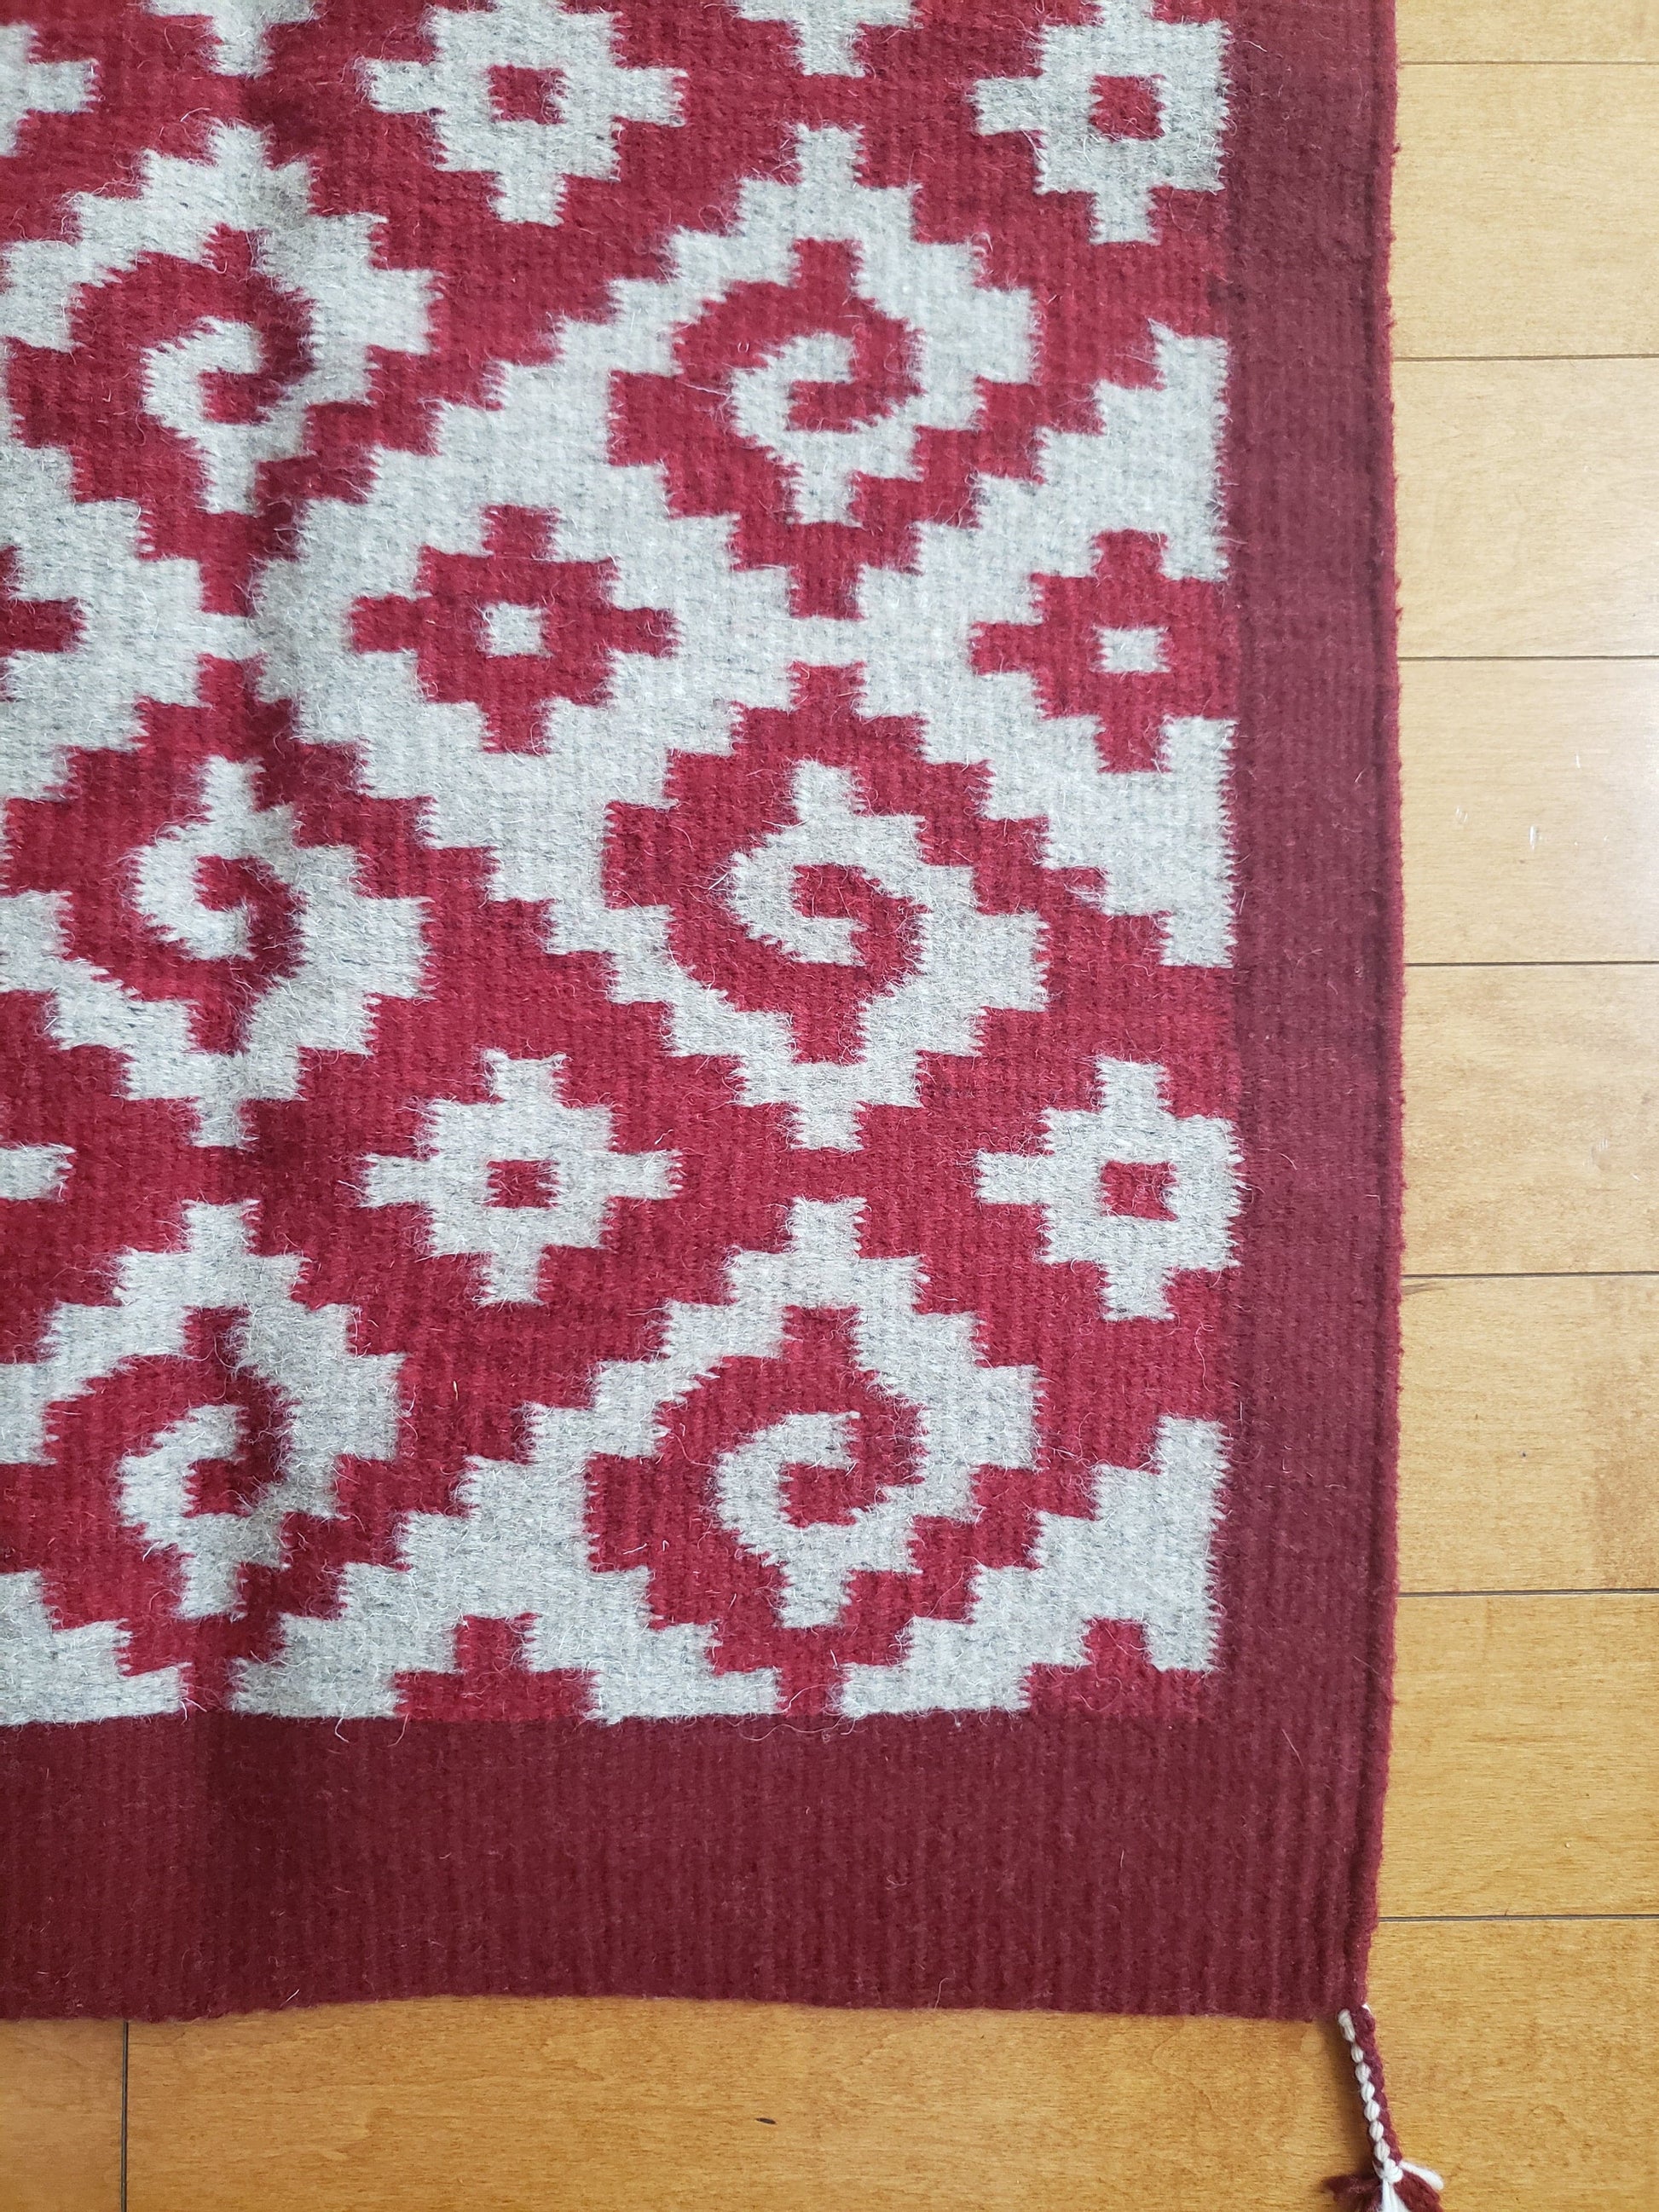 Detalle de tapete mexicano, tejido en telar y teñido artesanalmente. Diseño geométrico con grecas color rojo, tinte natural de grana cochinilla.